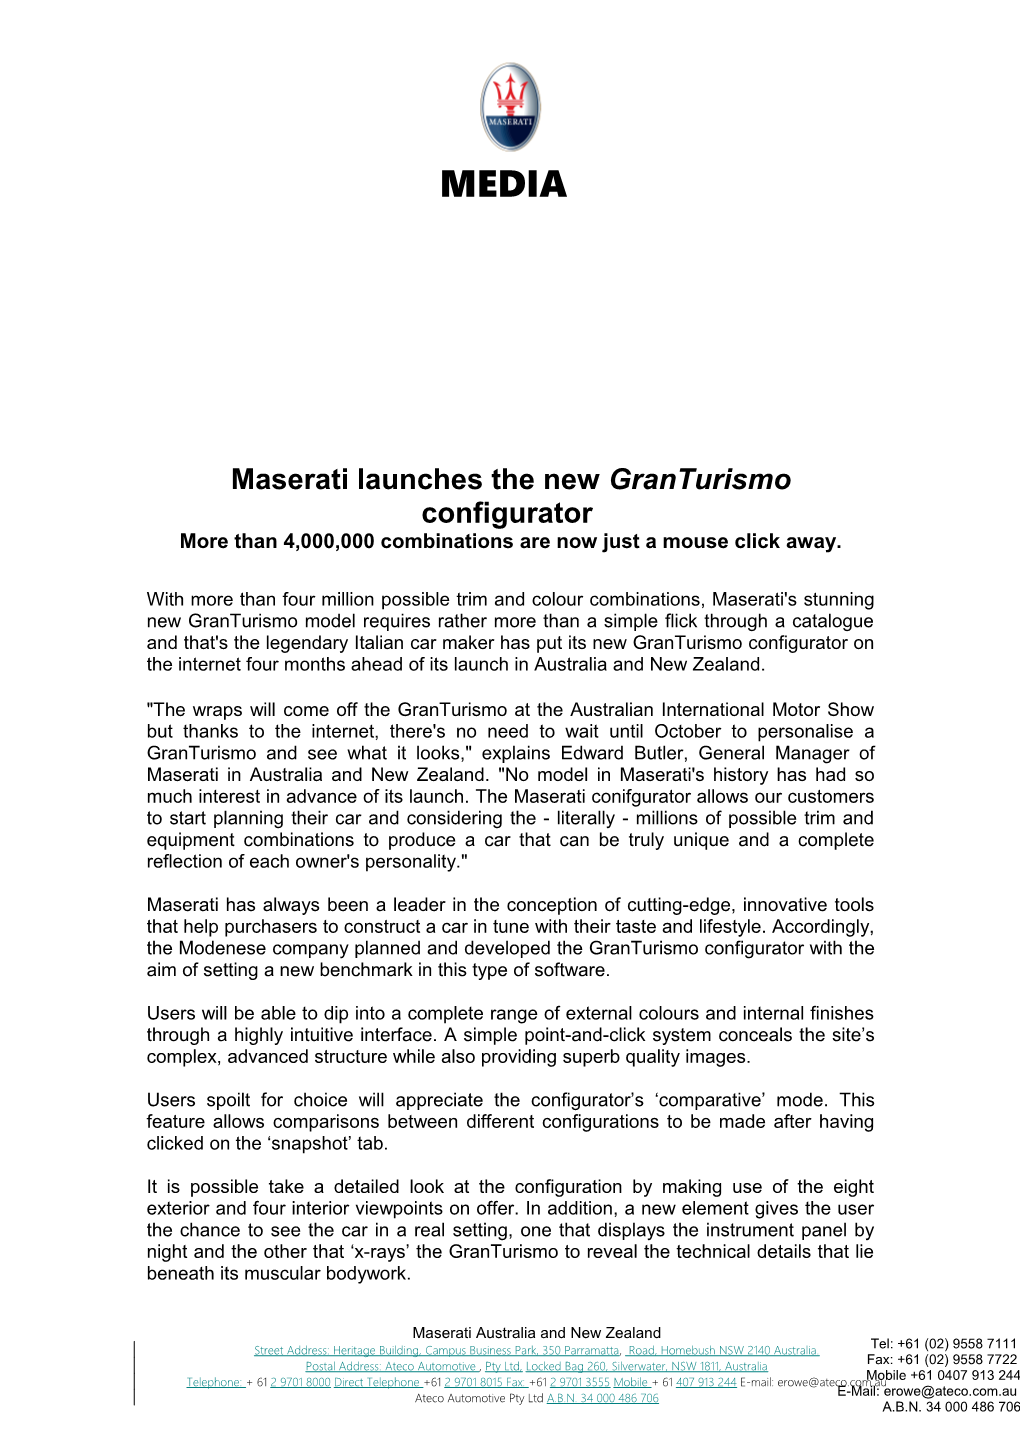 Maserati Launches the New Granturismo Configurator